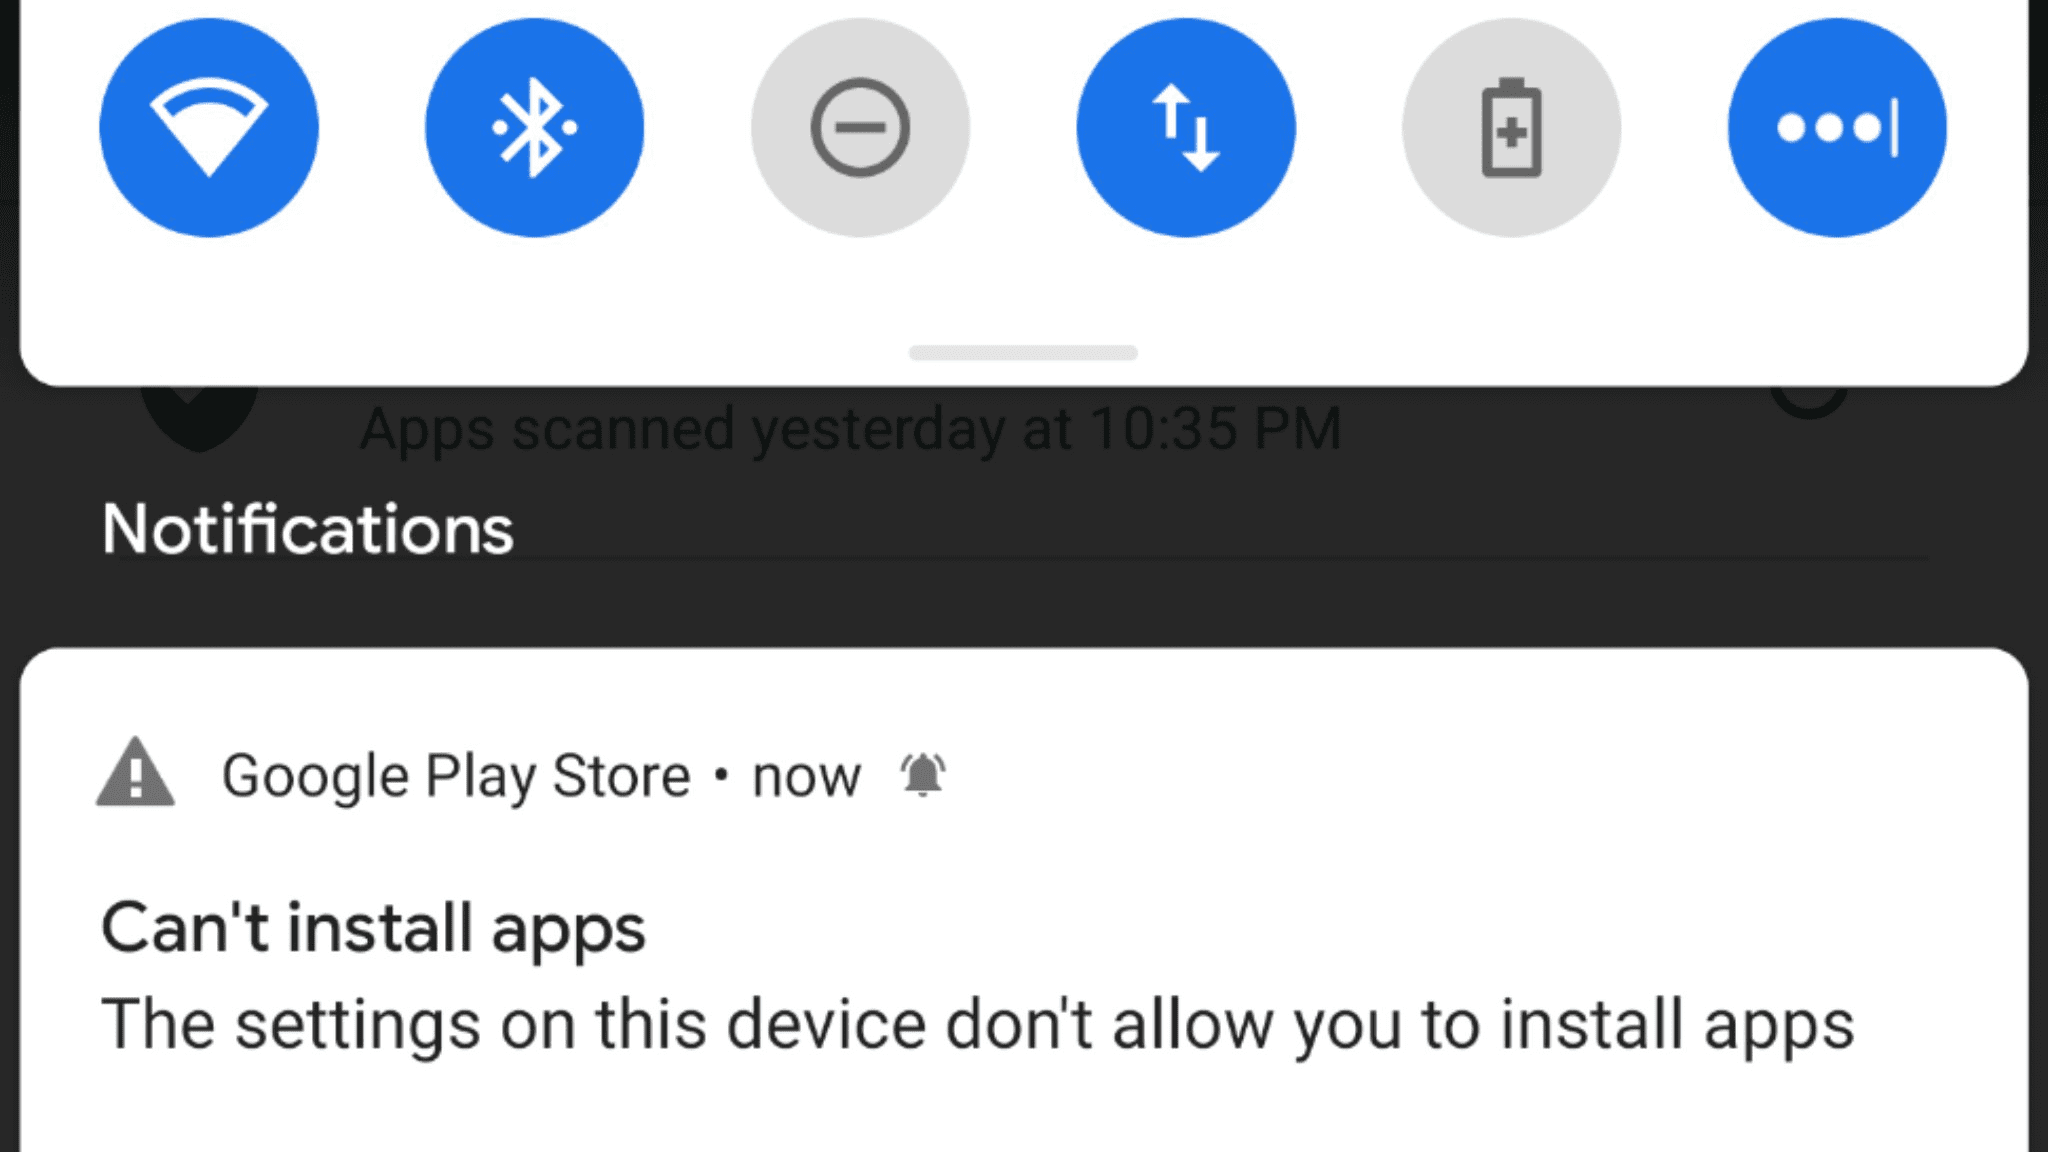 Play Store benachrichtigt einige Benutzer, dass "Apps nicht installiert werden können", obwohl dies möglich ist 86